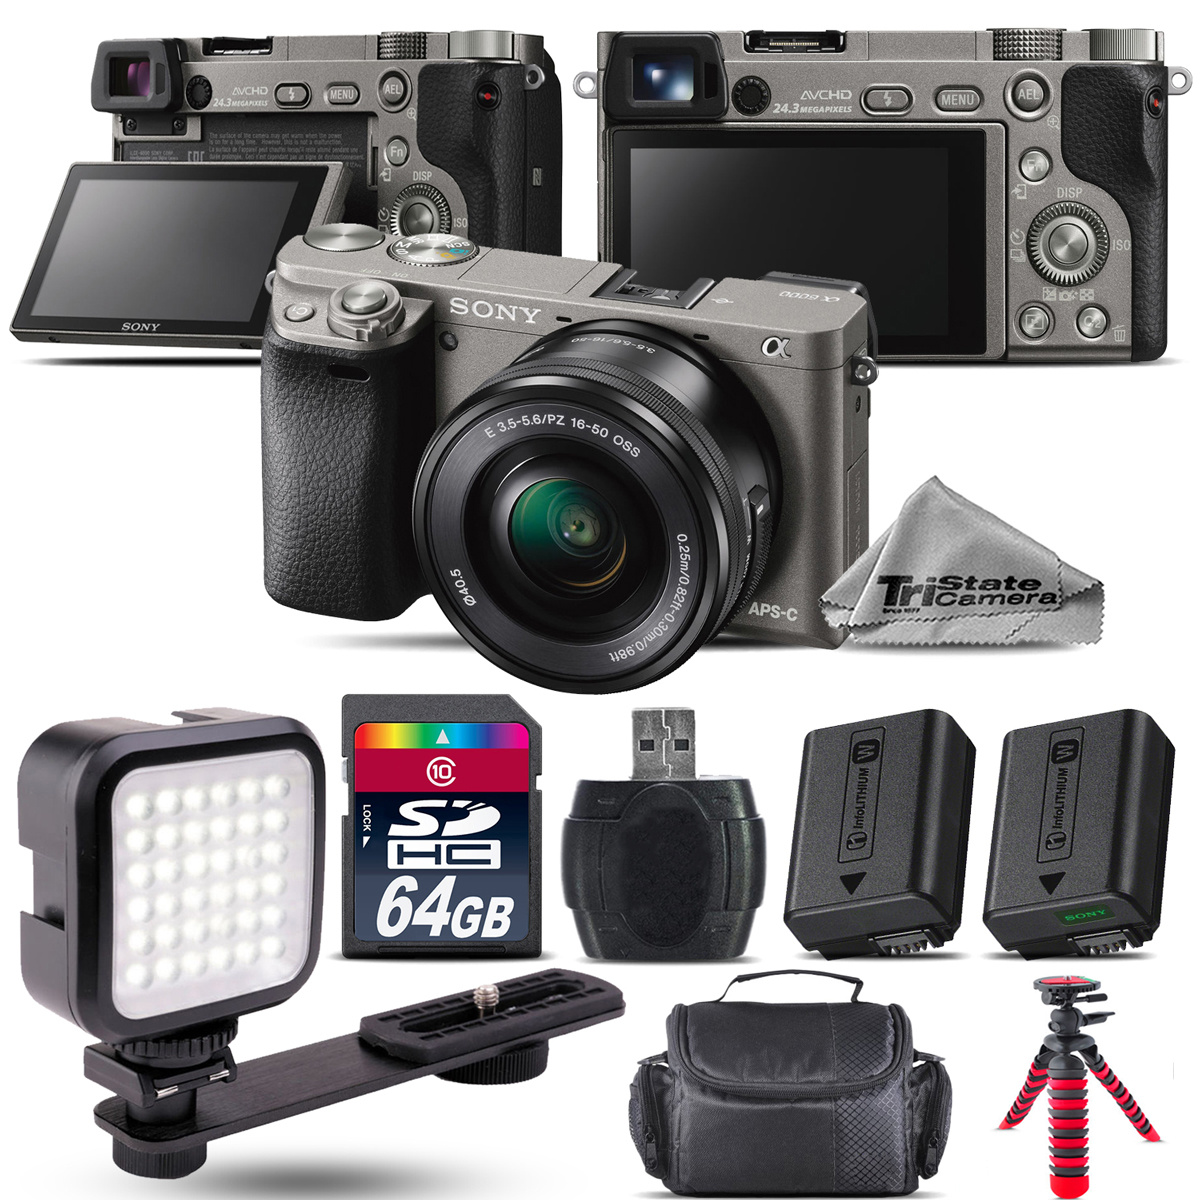 Sony Alpha a6000 Mirrorless Digital Camera + 16-50mm Lens (Black